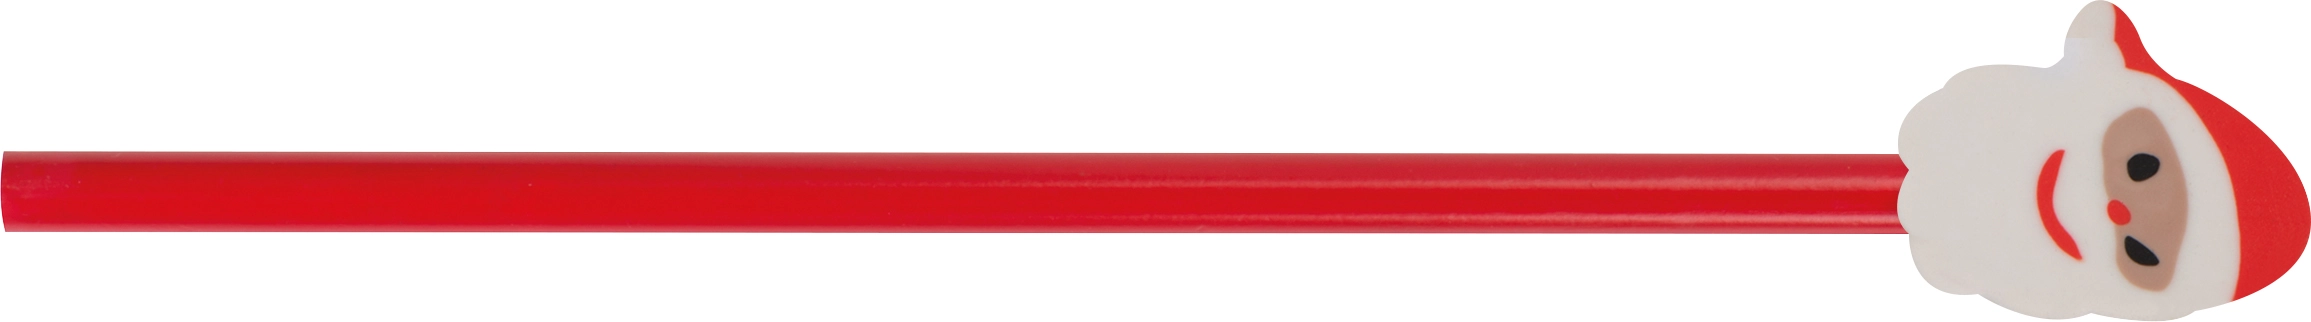 Ołówek z gumką GM-10620-WE wielokolorowy